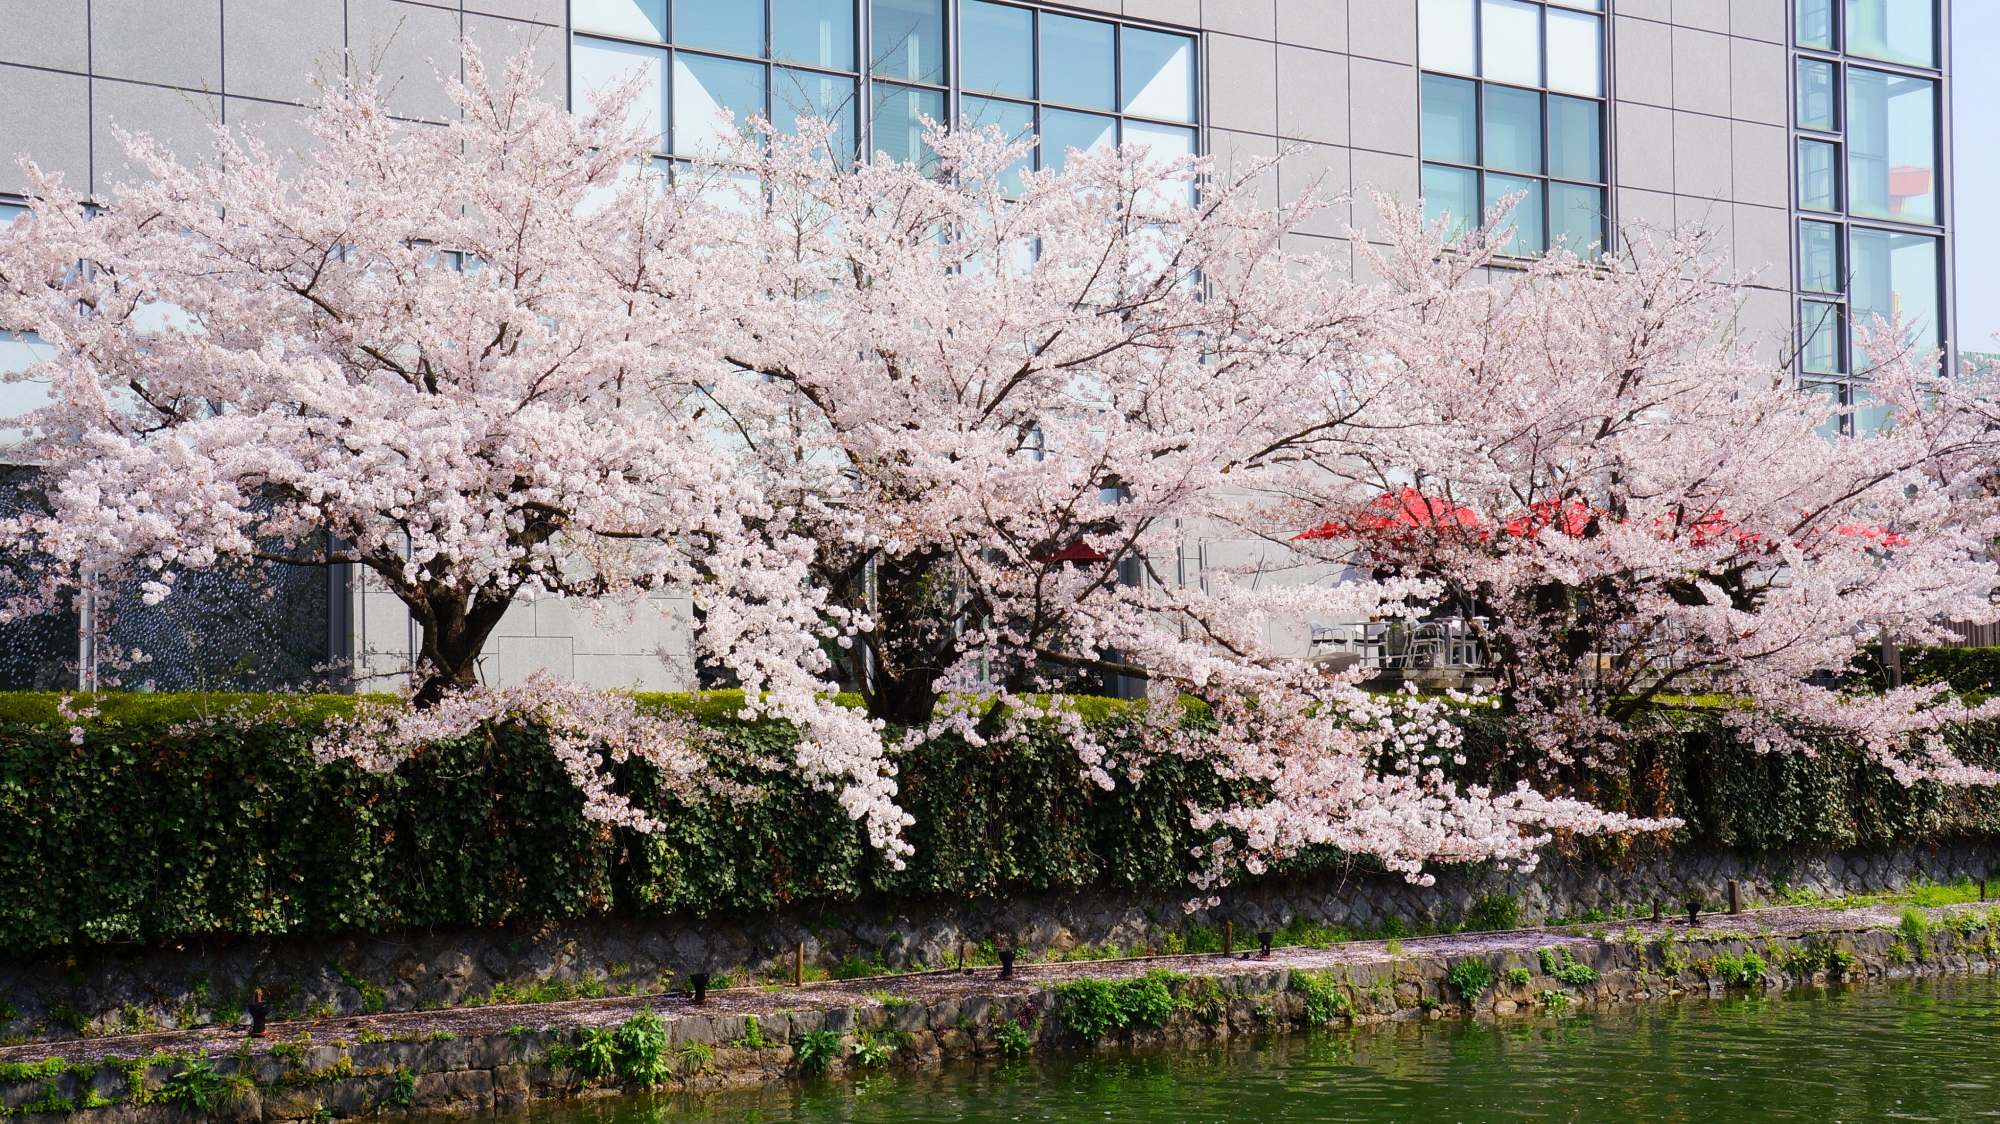 上品な建物と良く合う華やかな桜